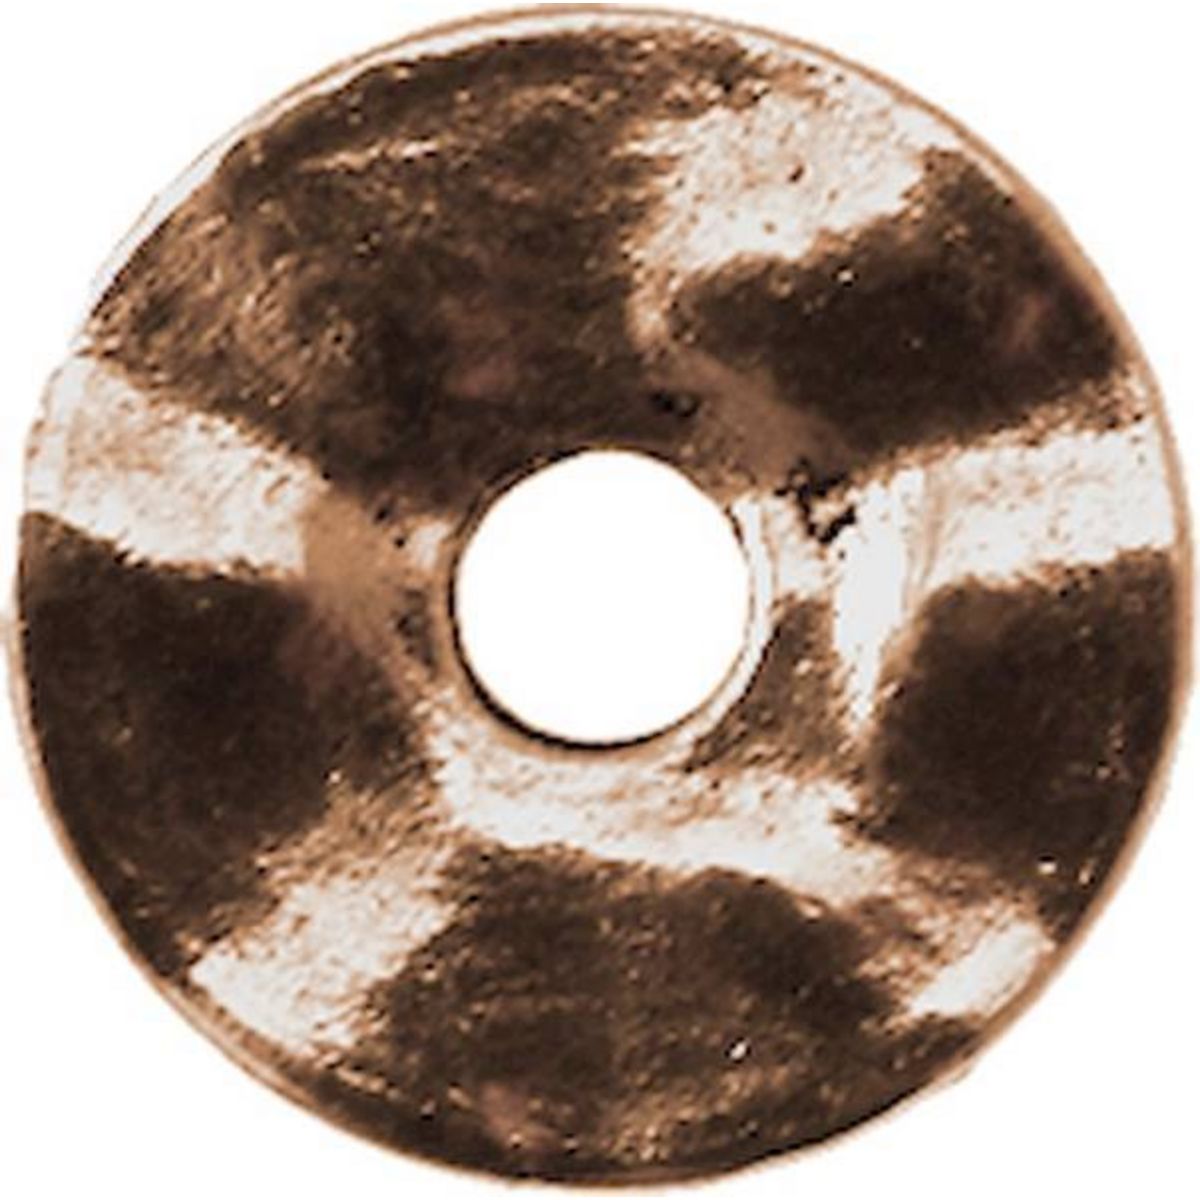 MegaCrea Anneau donut métal 18 mm Cuivré 10 pièces